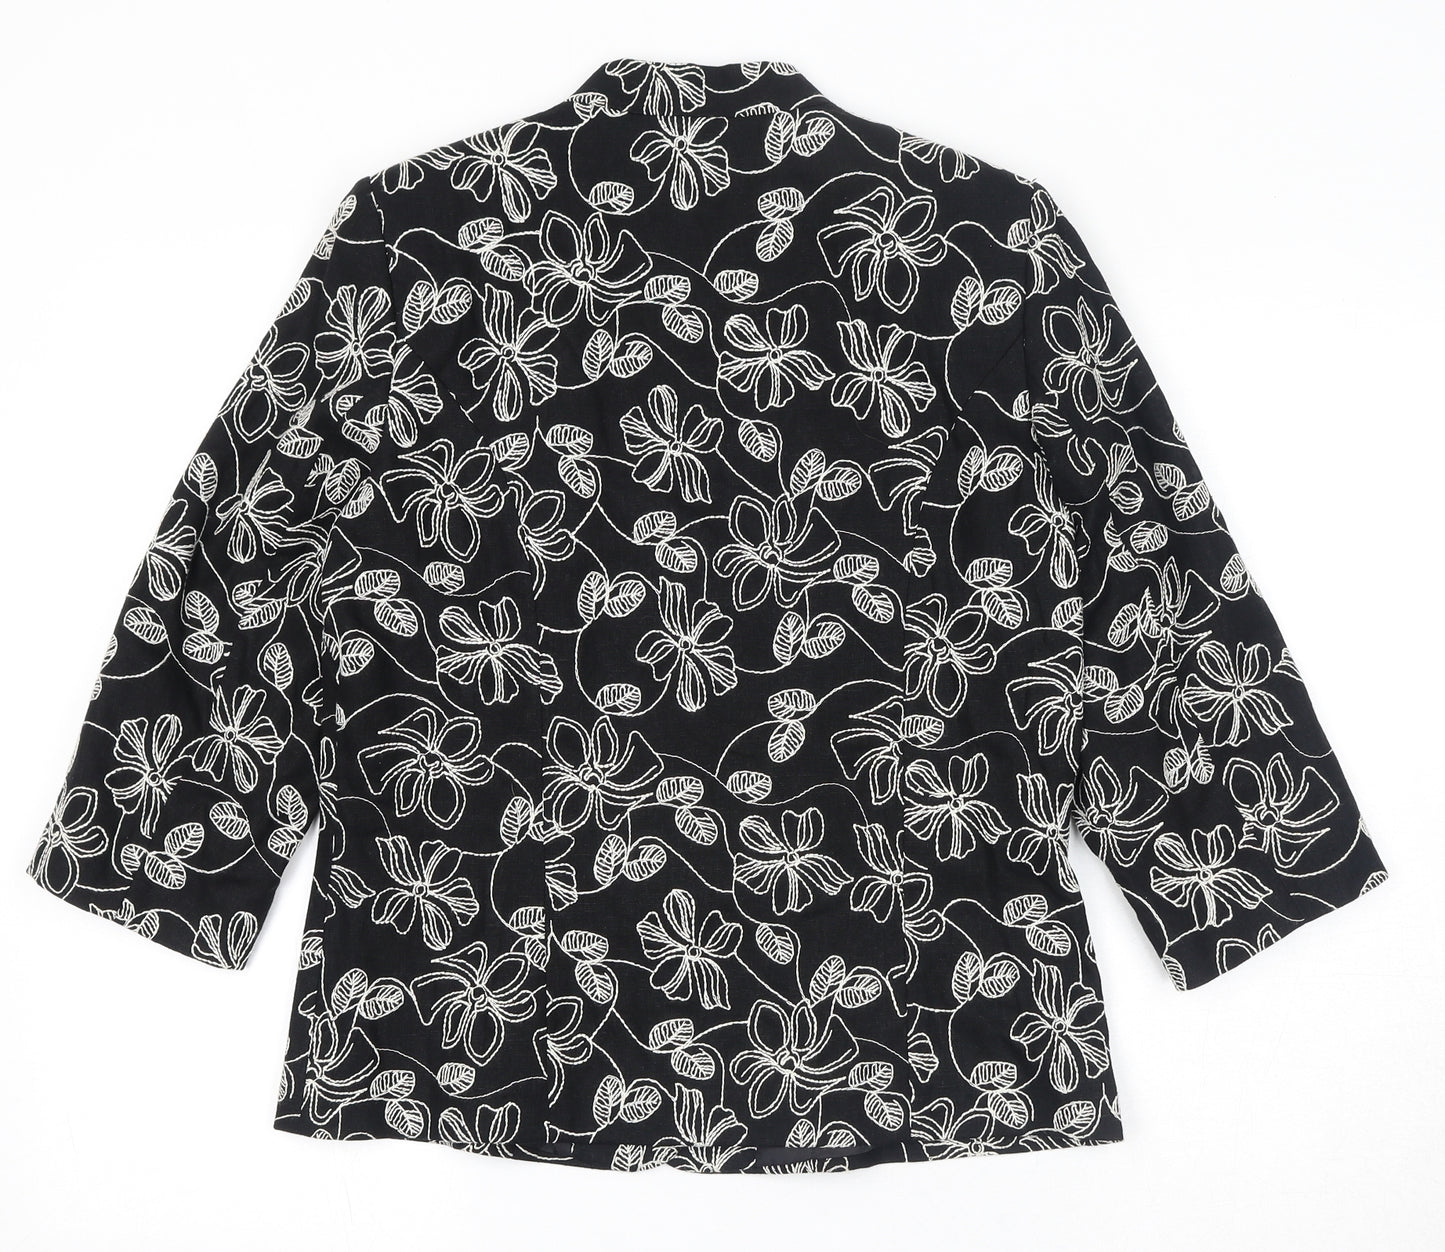 EWM Womens Black Floral Jacket Blazer Size 10 Button